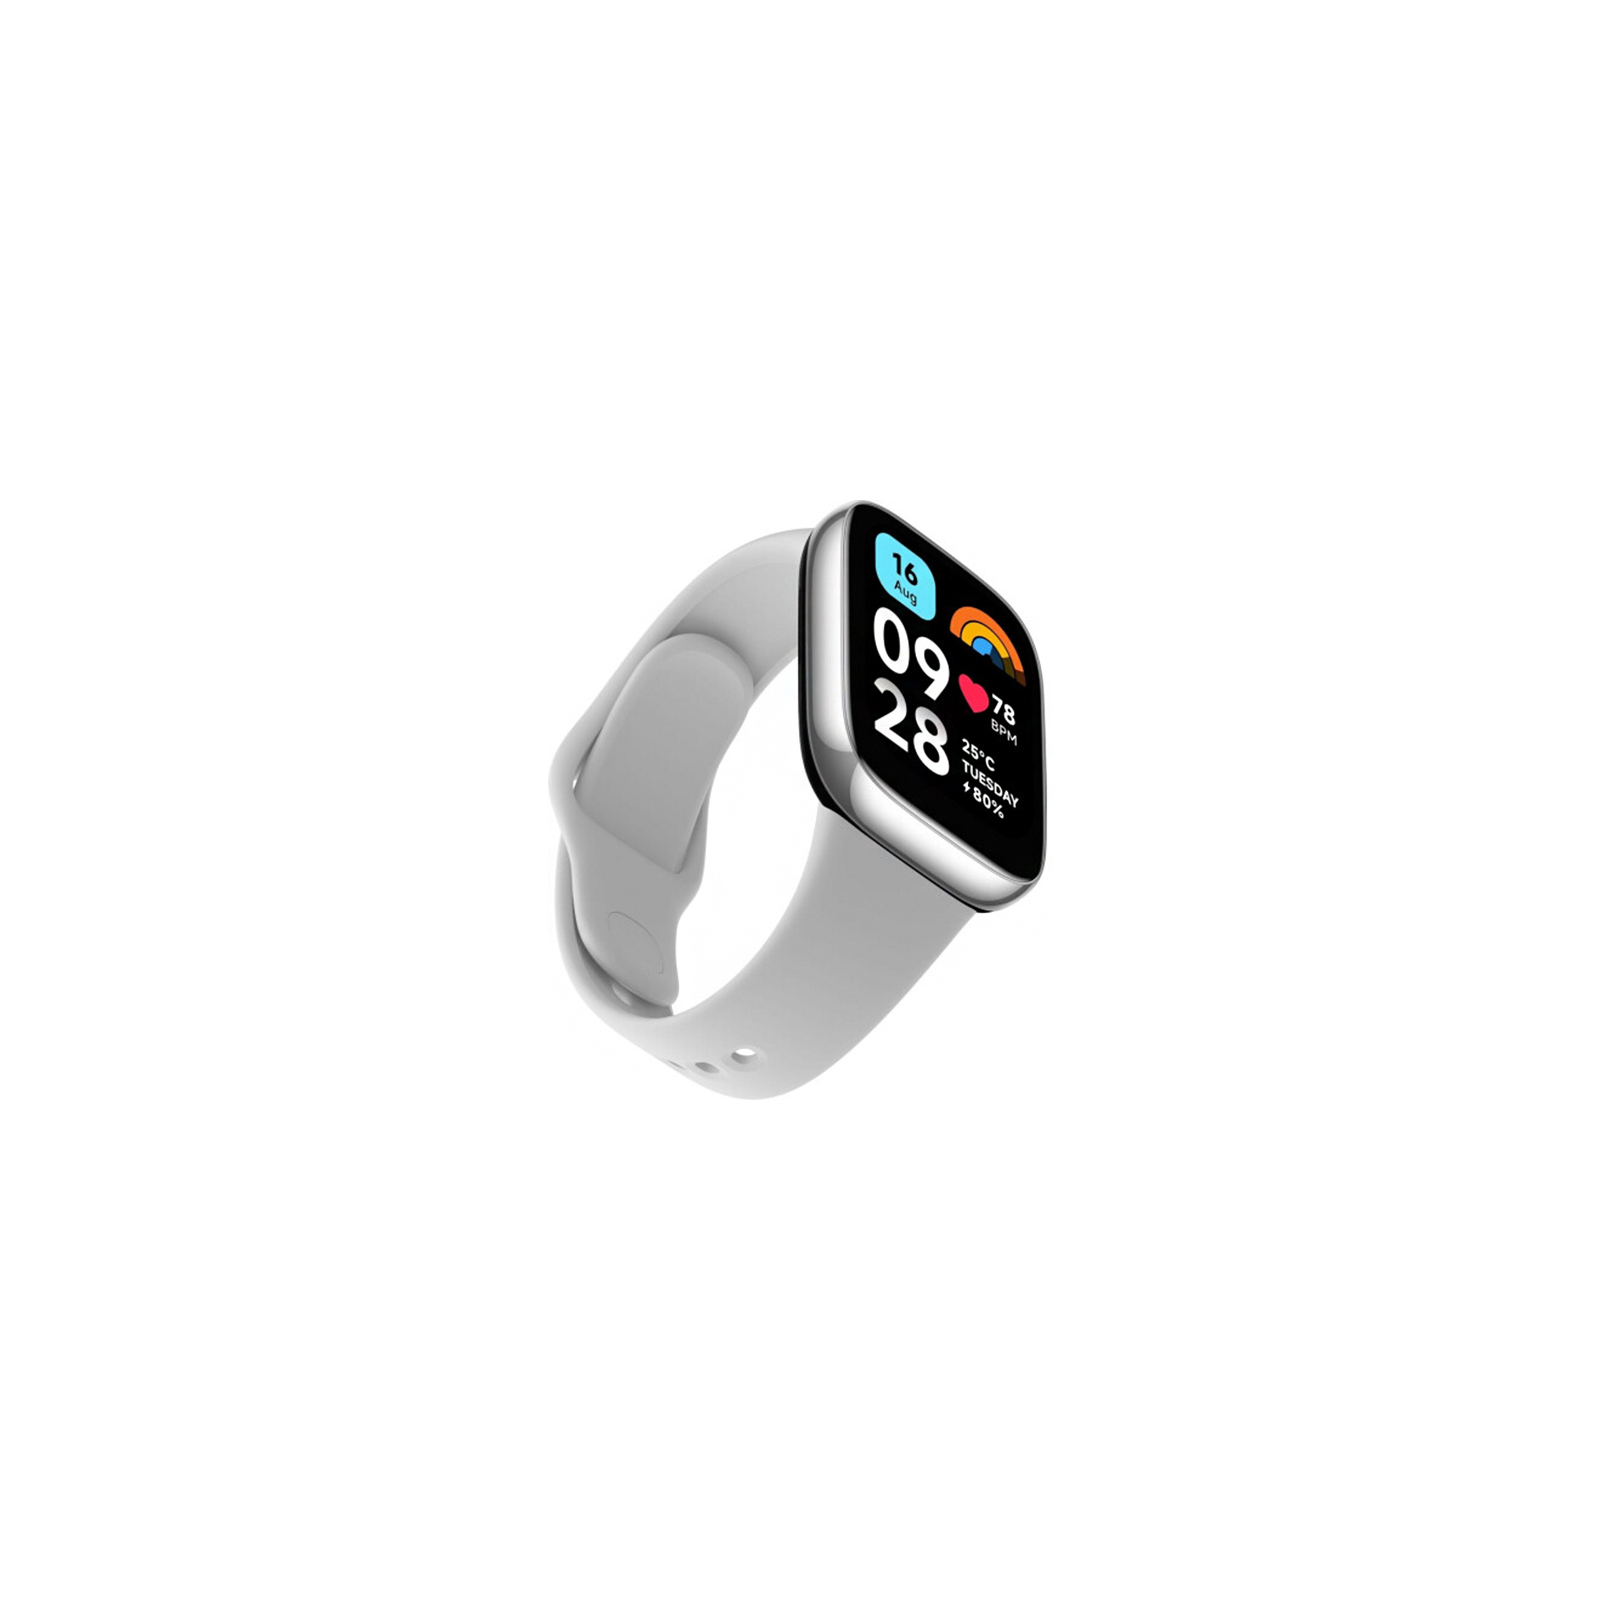 Смарт-часы Xiaomi Redmi Watch 3 Active Black (995312) изображение 7